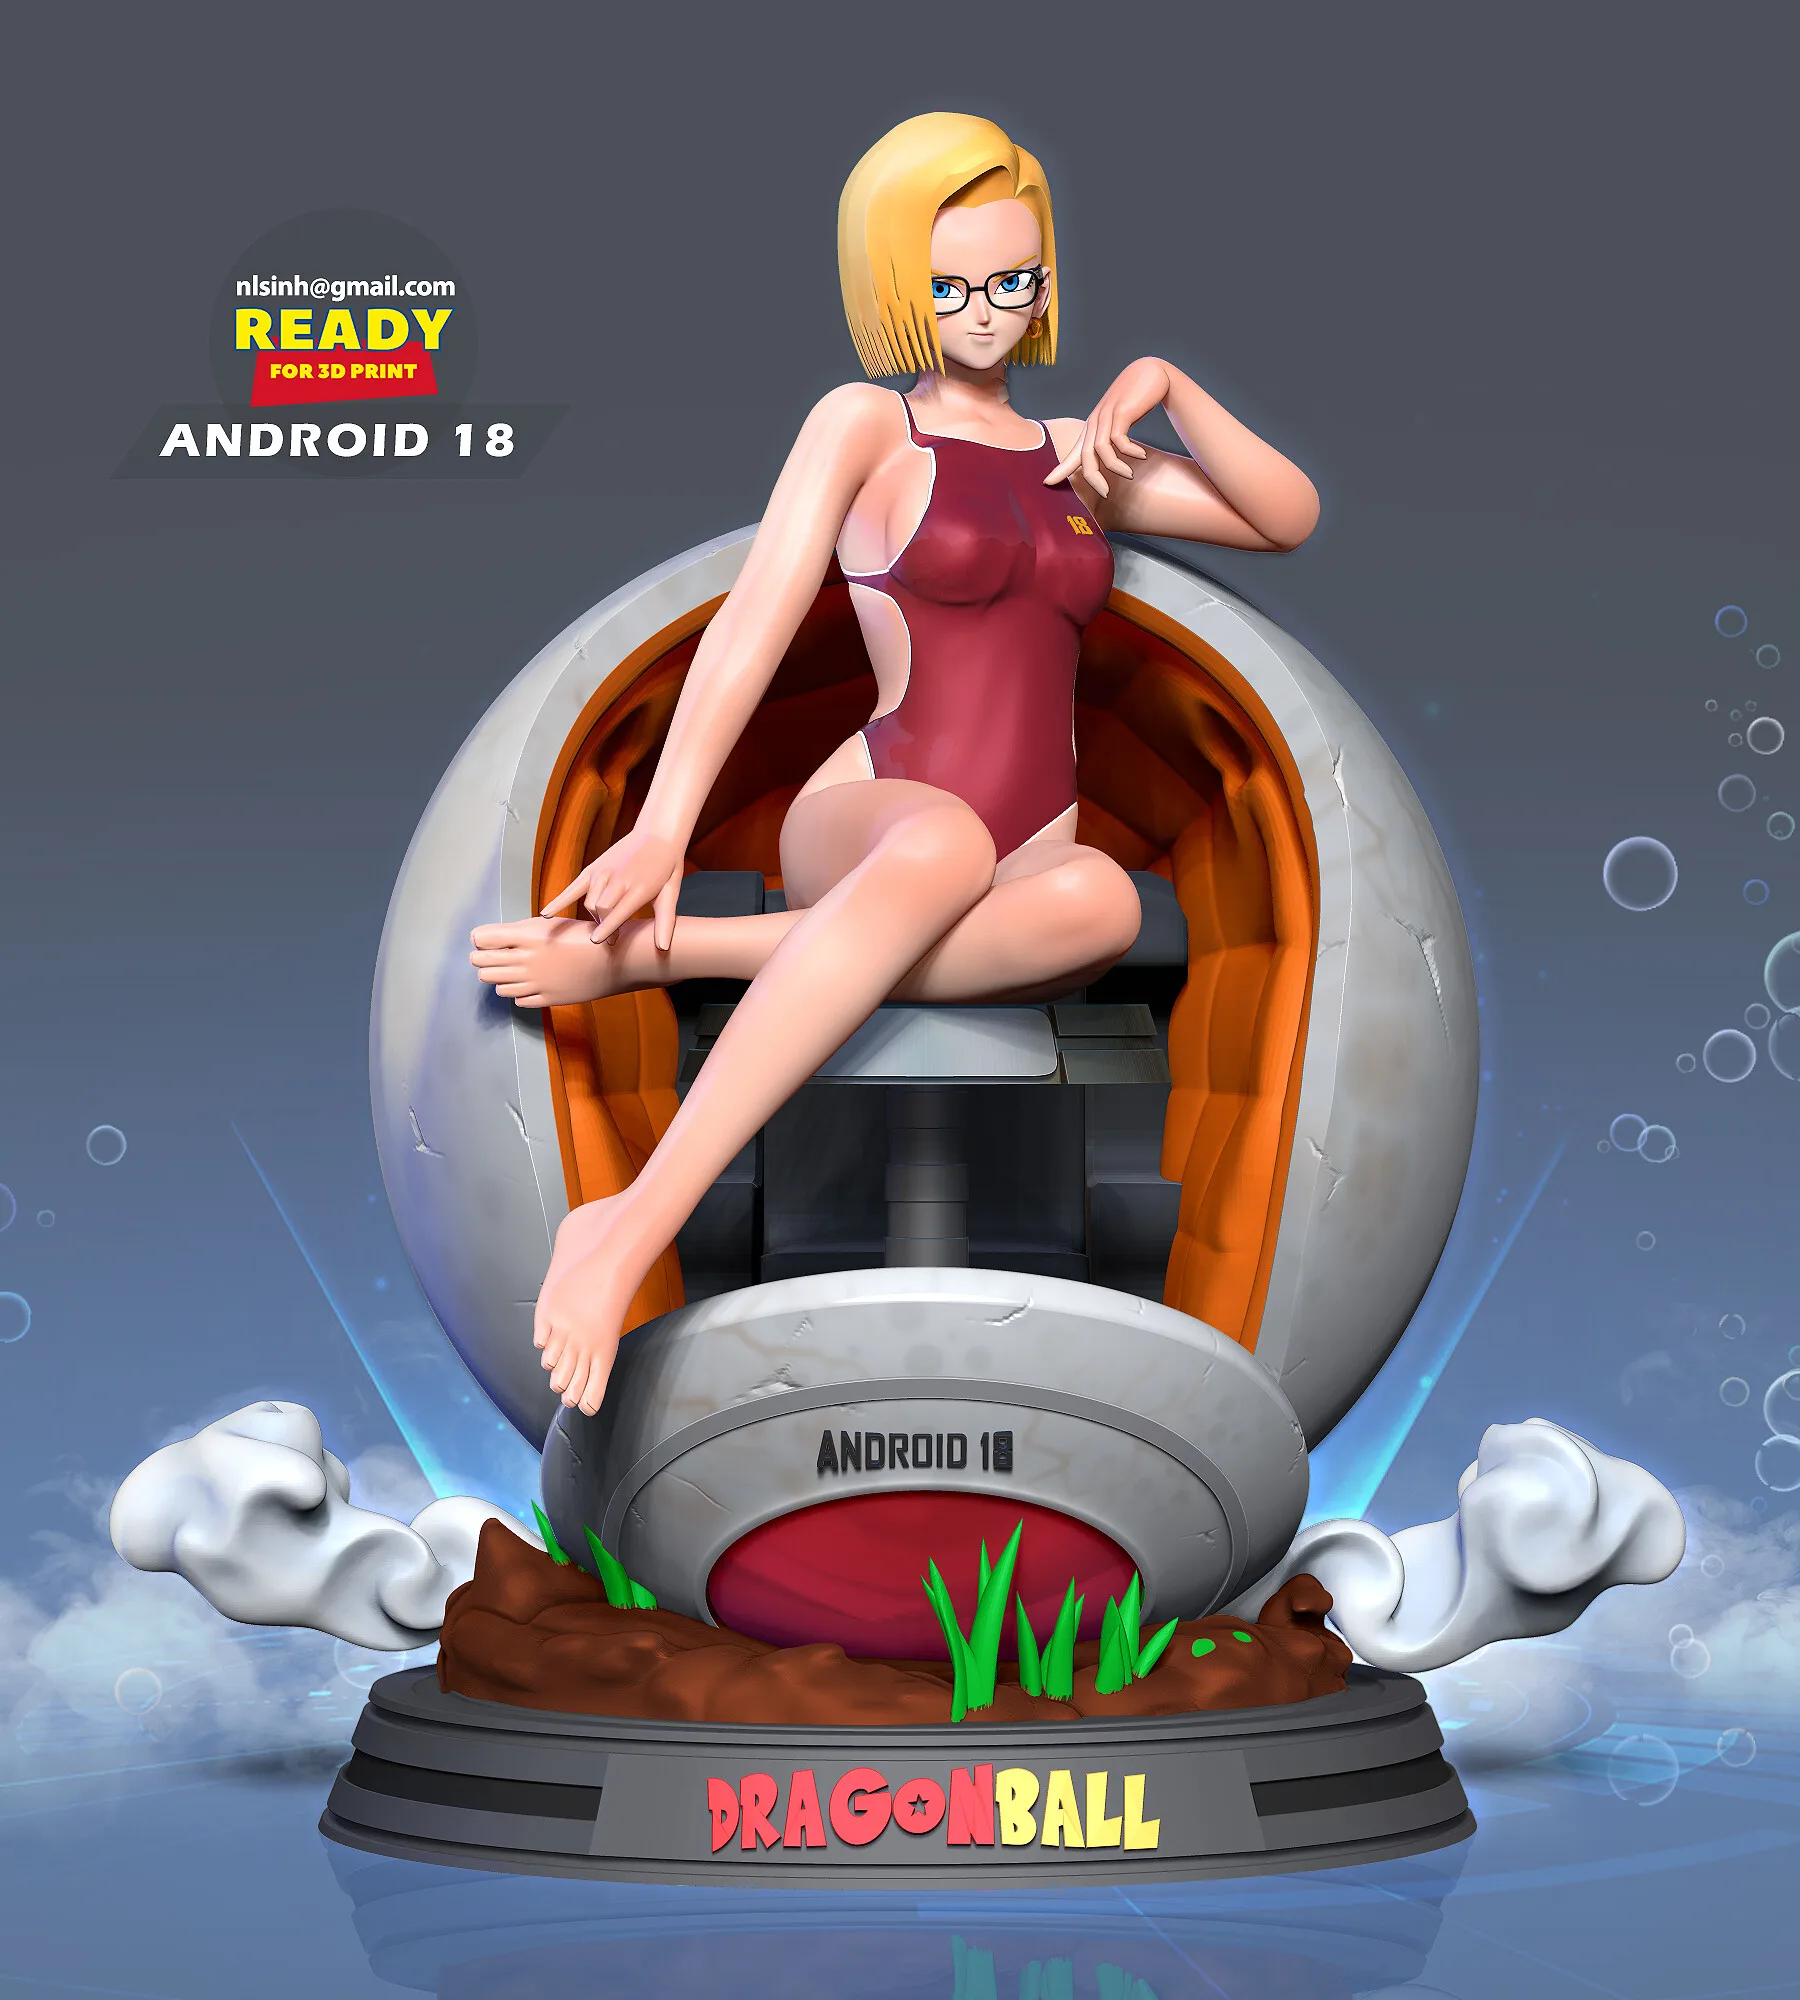 Android 18 in bikini